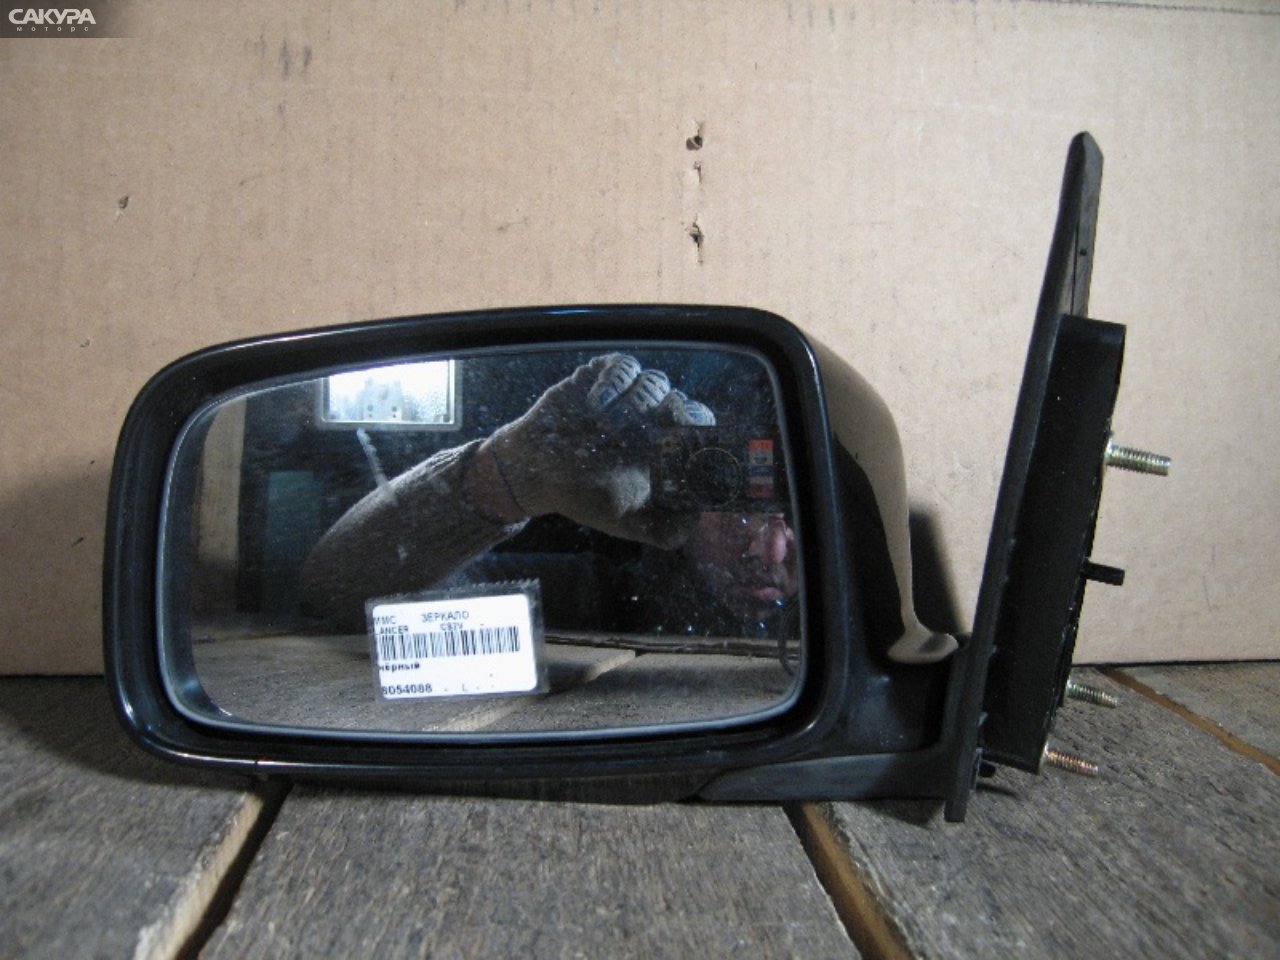 Зеркало боковое левое Mitsubishi Lancer Cedia CS2A: купить в Сакура Абакан.